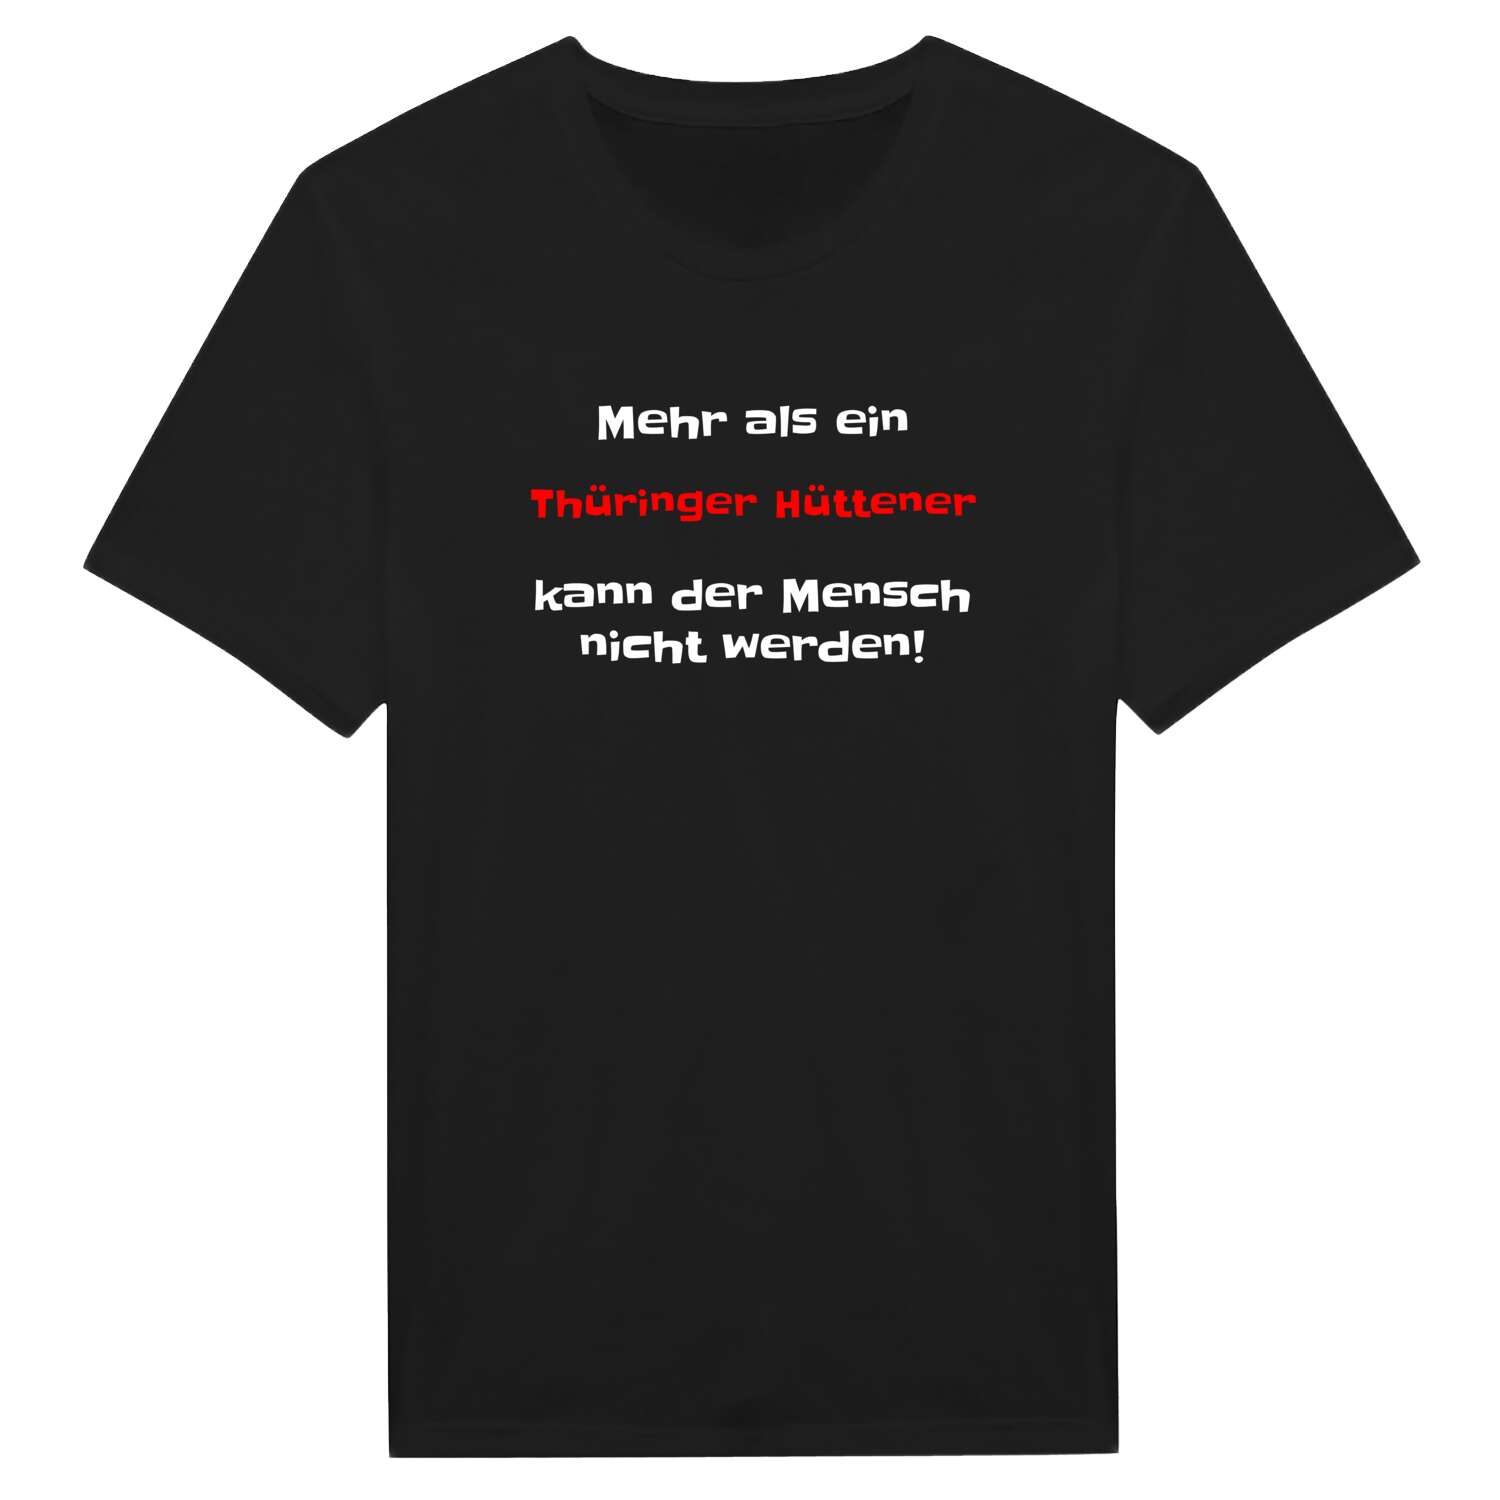 Thüringer Hütte T-Shirt »Mehr als ein«